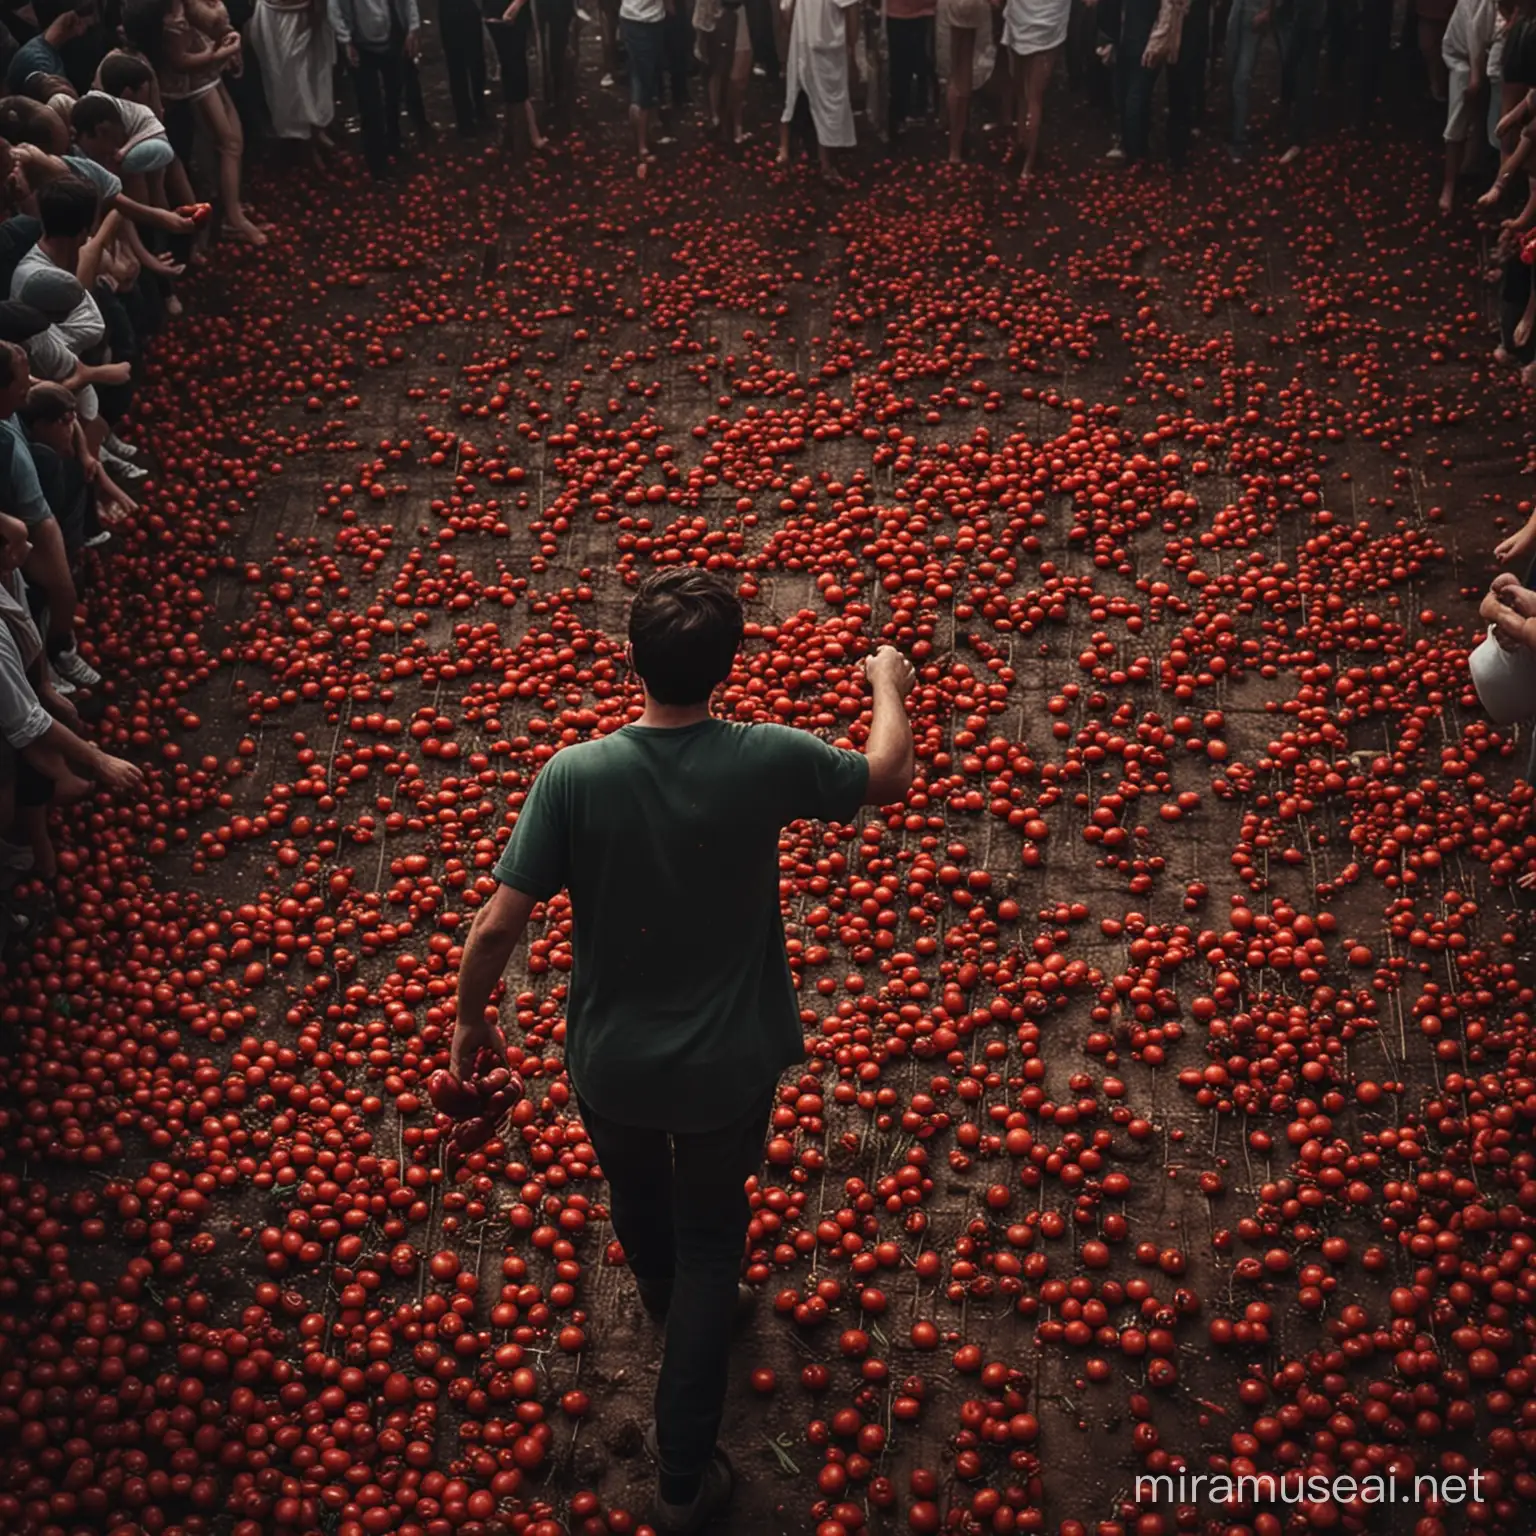 صورة سينمائية مظلمة غامضة جميلة عن مهرجان للطماطم في إسبانيا حيث اناس يرمون انفسهم بالطماطم